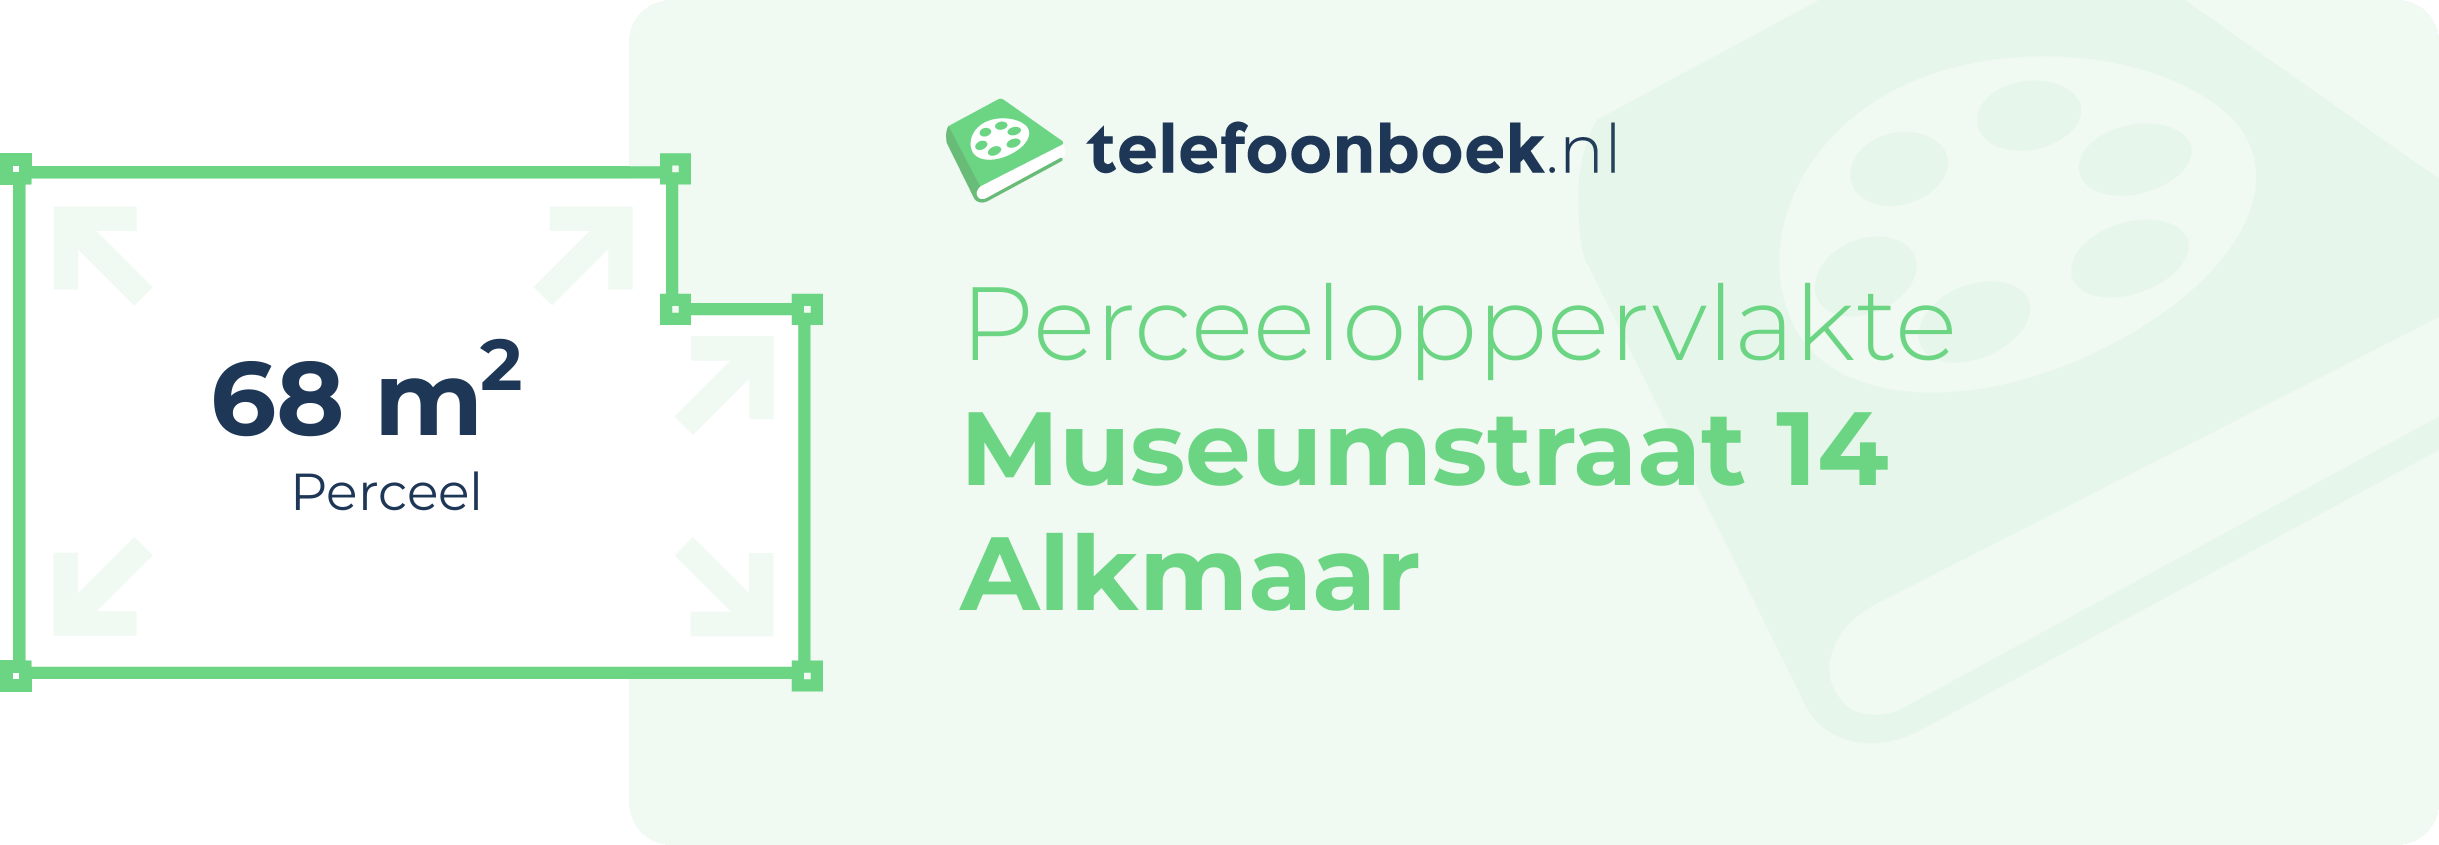 Perceeloppervlakte Museumstraat 14 Alkmaar